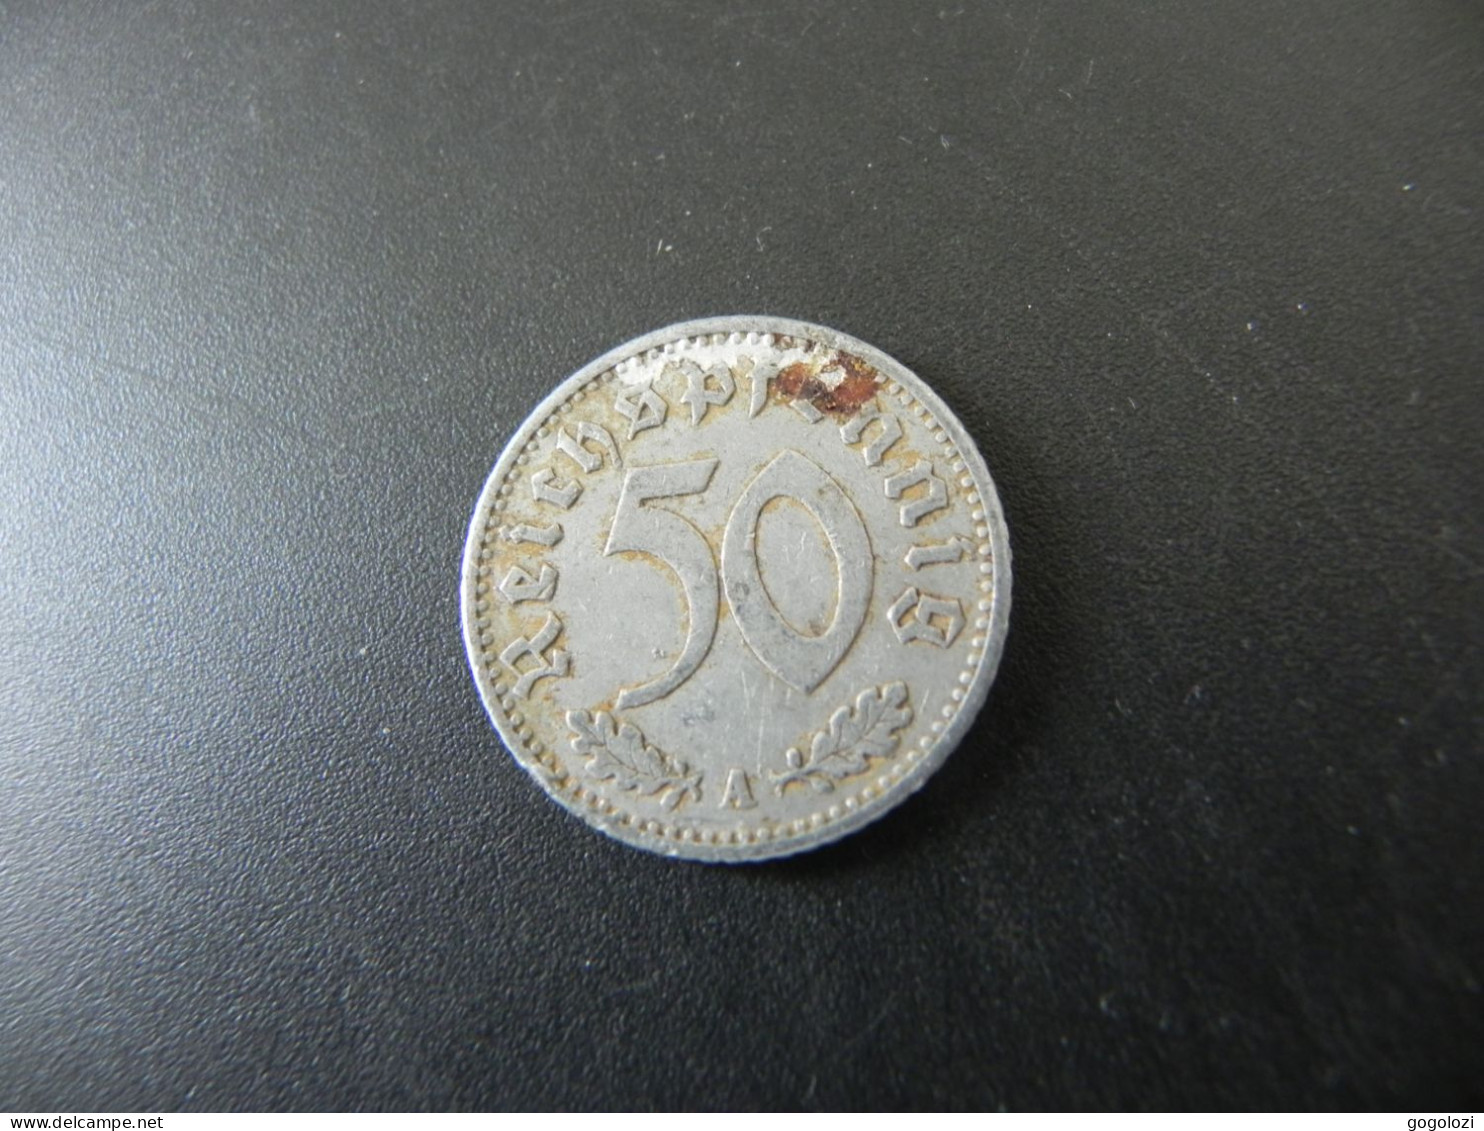 Deutschland 50 Reichspfennig 1935 A - 50 Reichspfennig